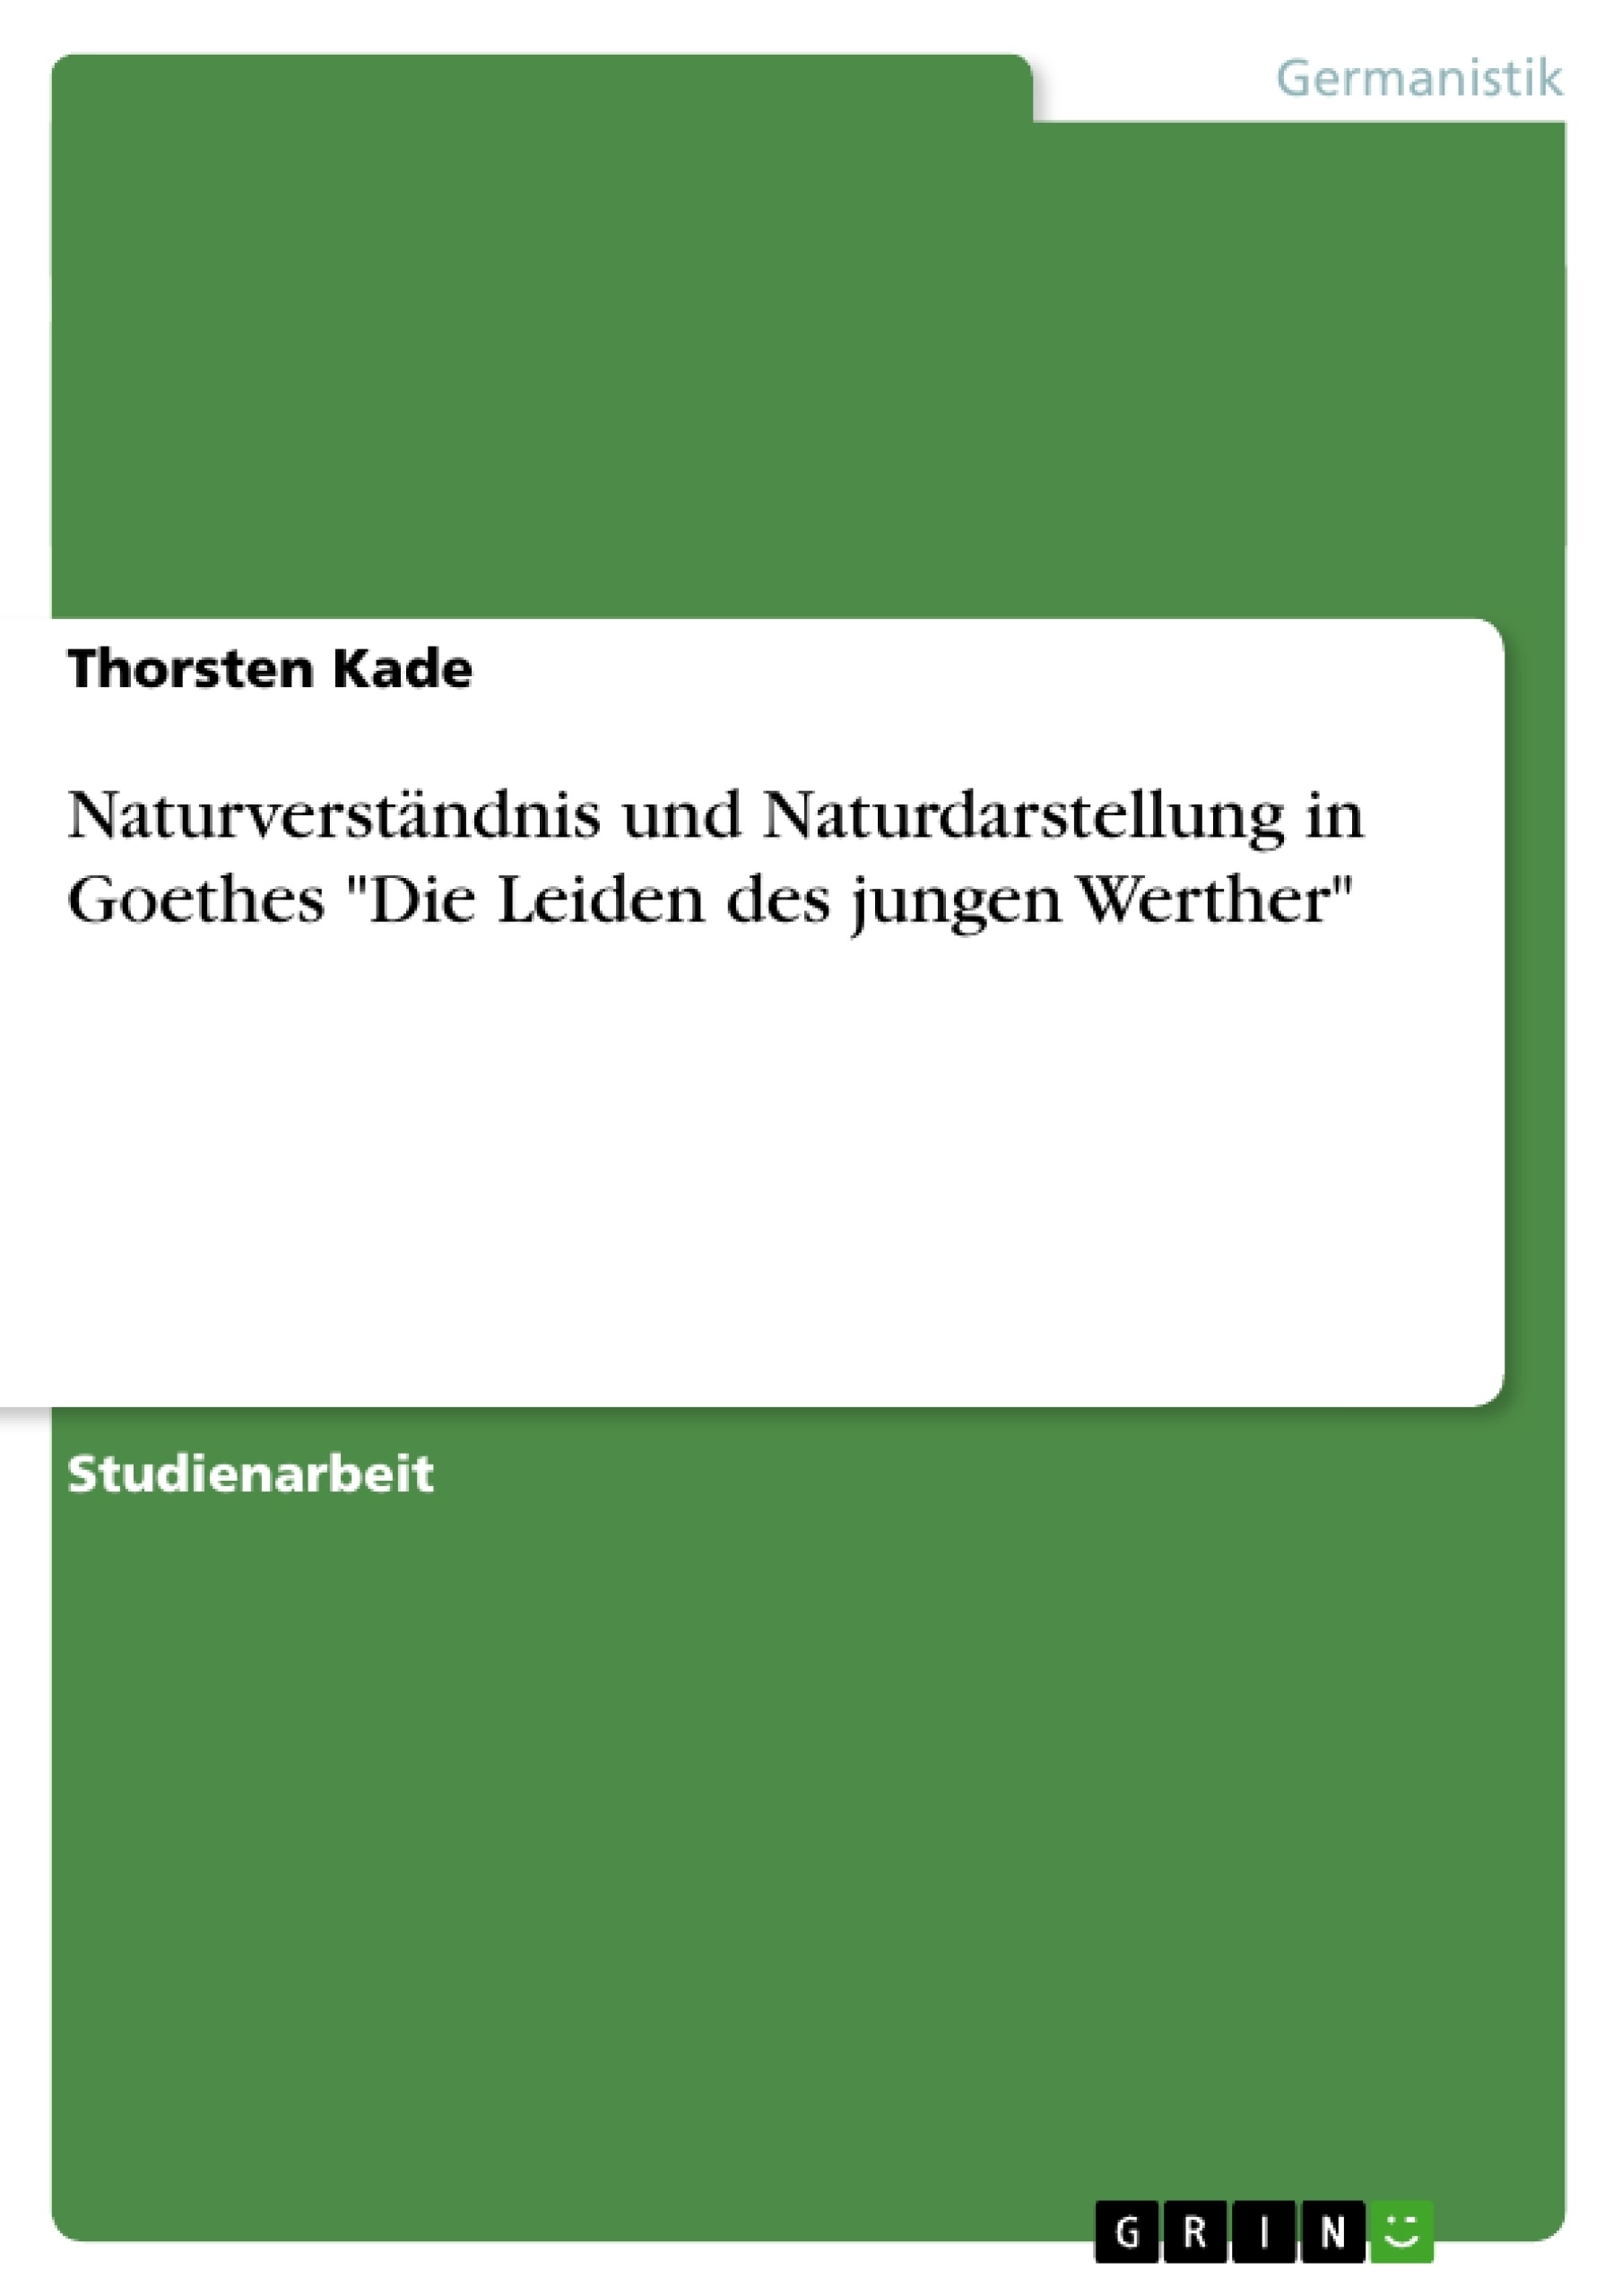 Title: Naturverständnis und Naturdarstellung in Goethes "Die Leiden des jungen Werther" 